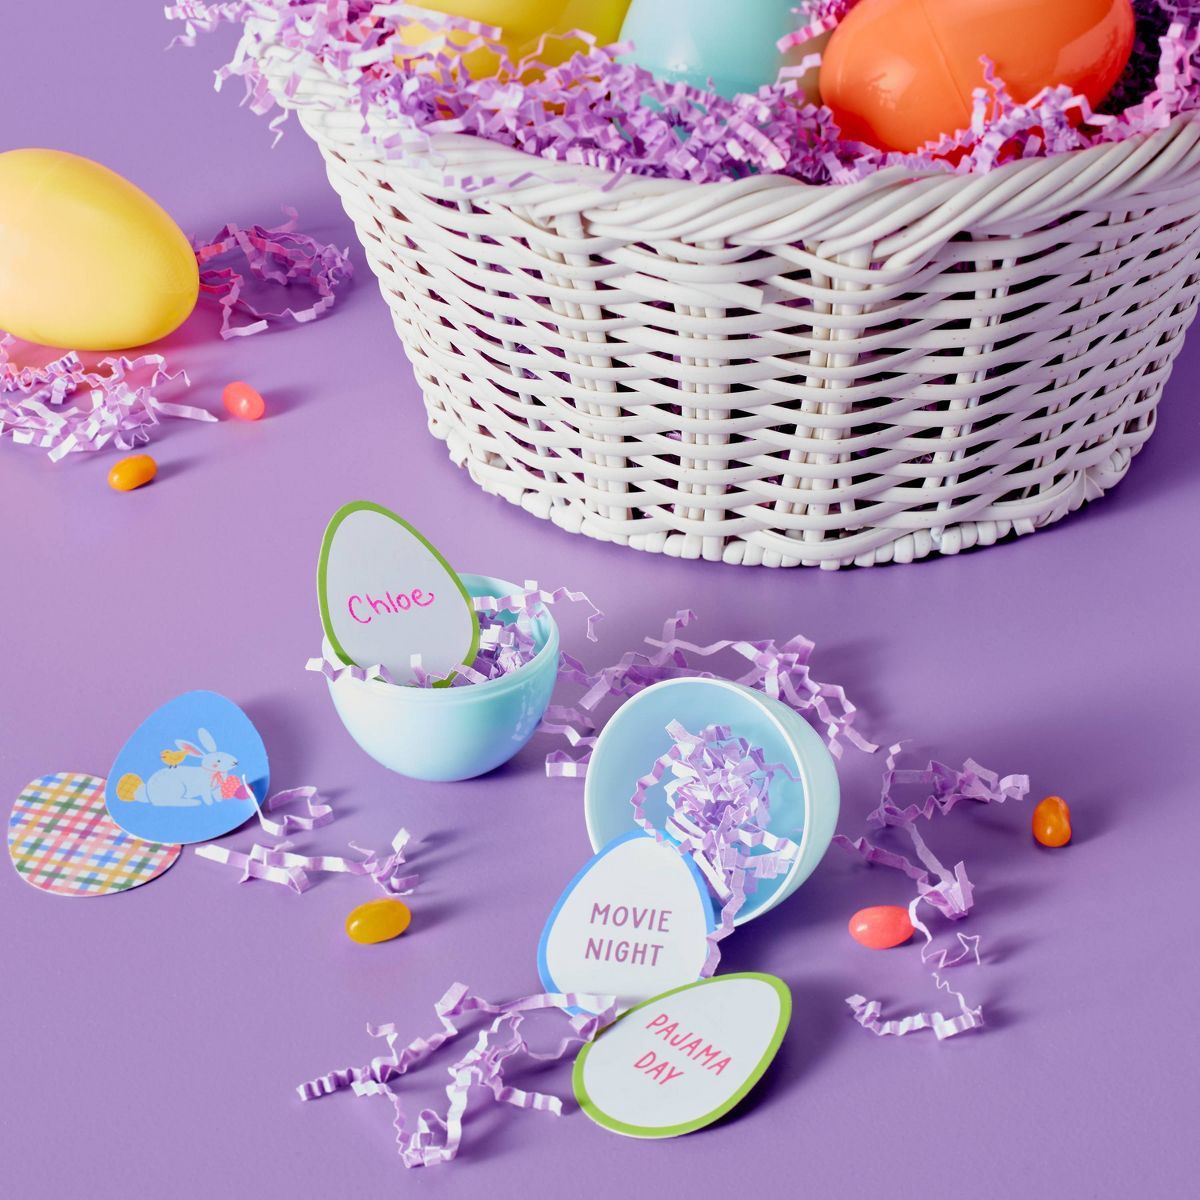 2ct Easter Egg Filler Reward Cards - Spritz™ | Target